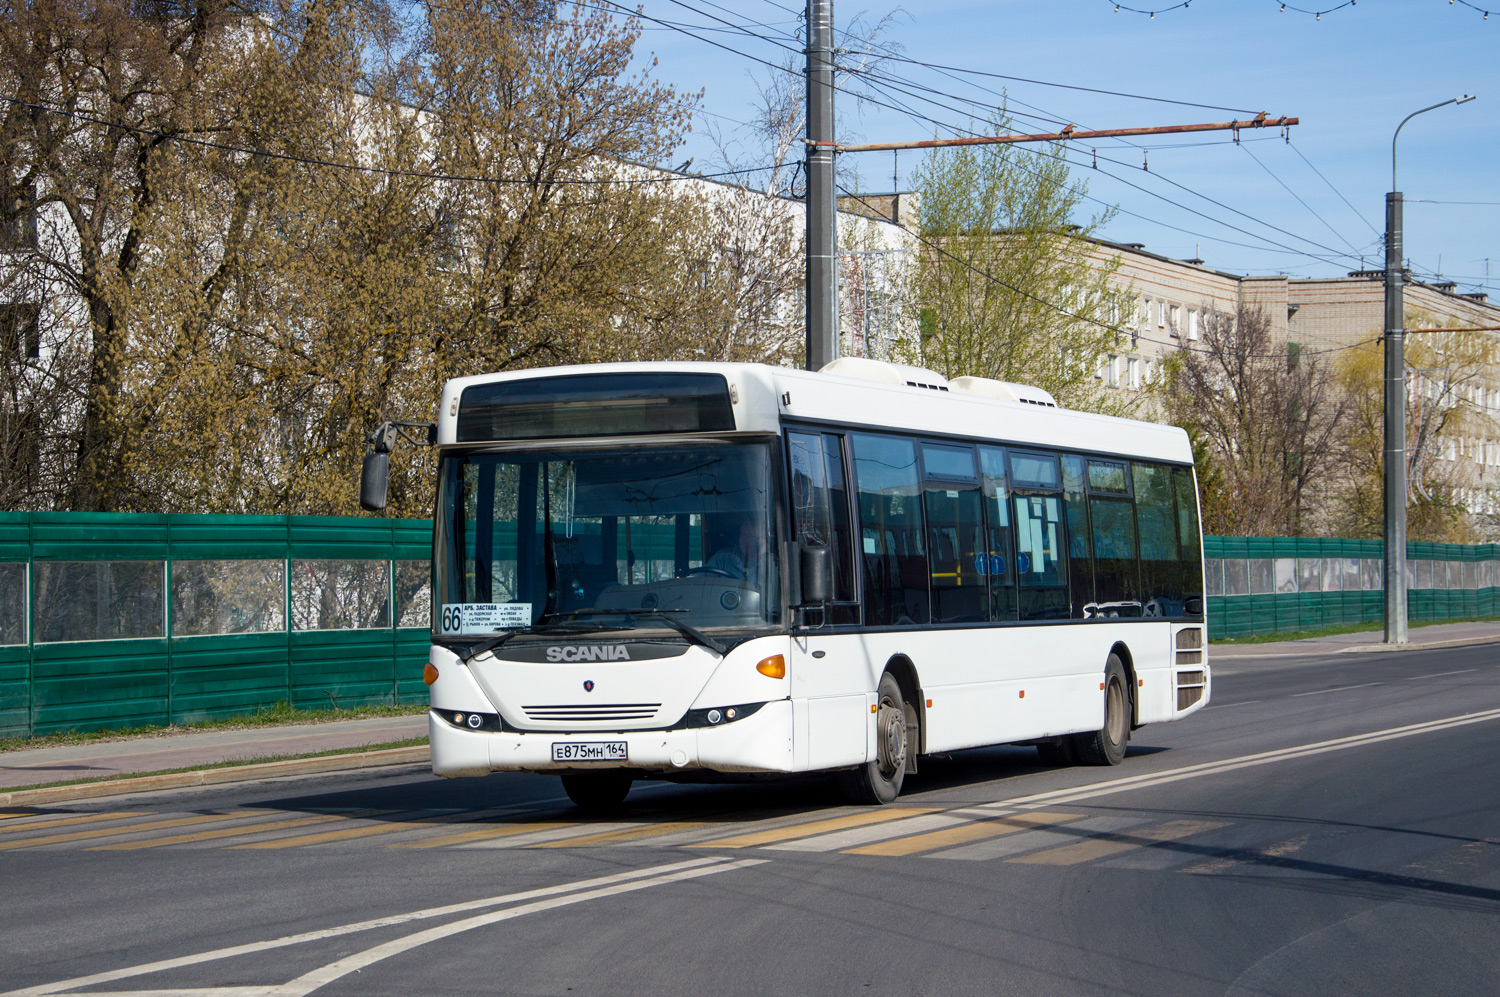 Penza region, Scania OmniLink II (Scania-St.Petersburg) # Е 875 МН 164